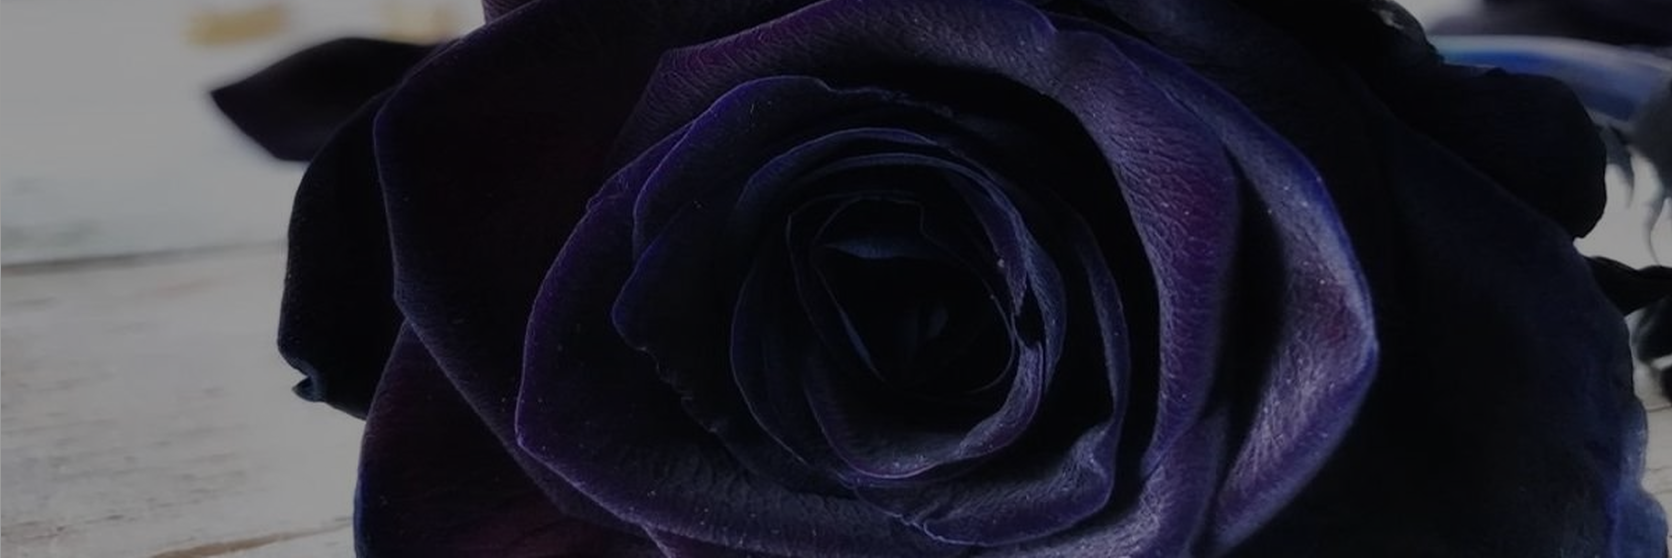 black-rose-flower